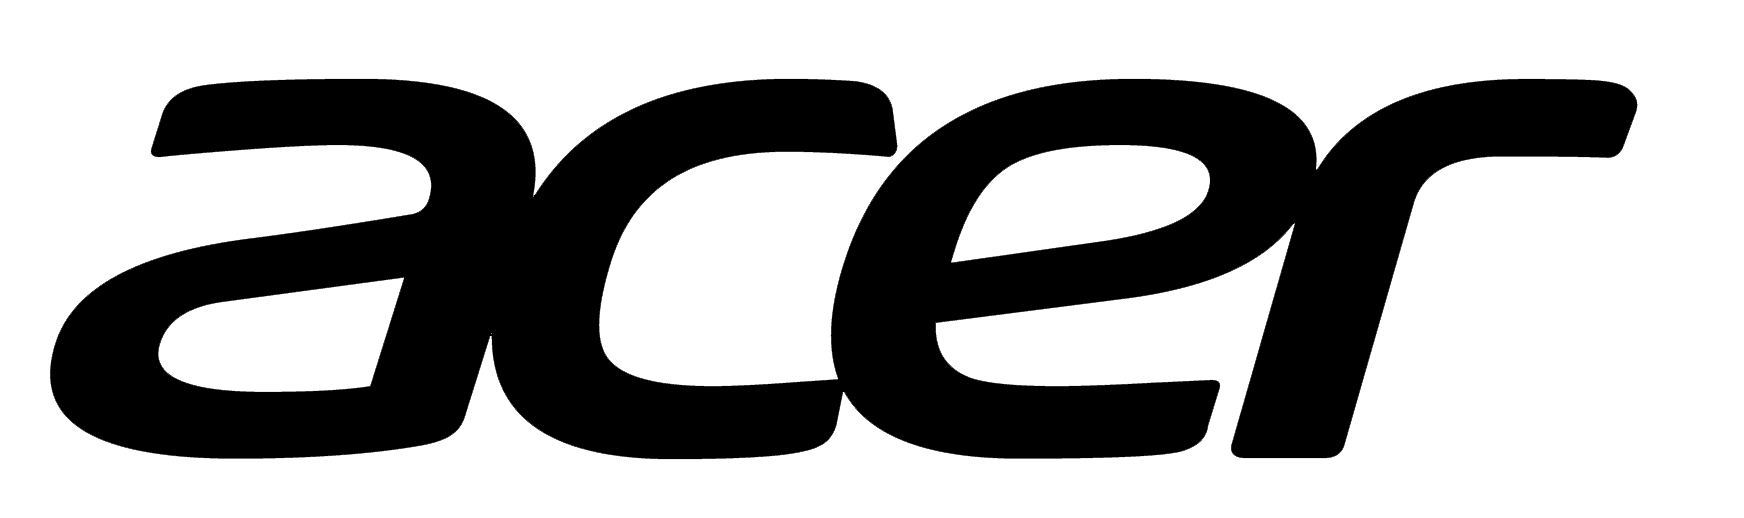 Acer_logo_PNG4